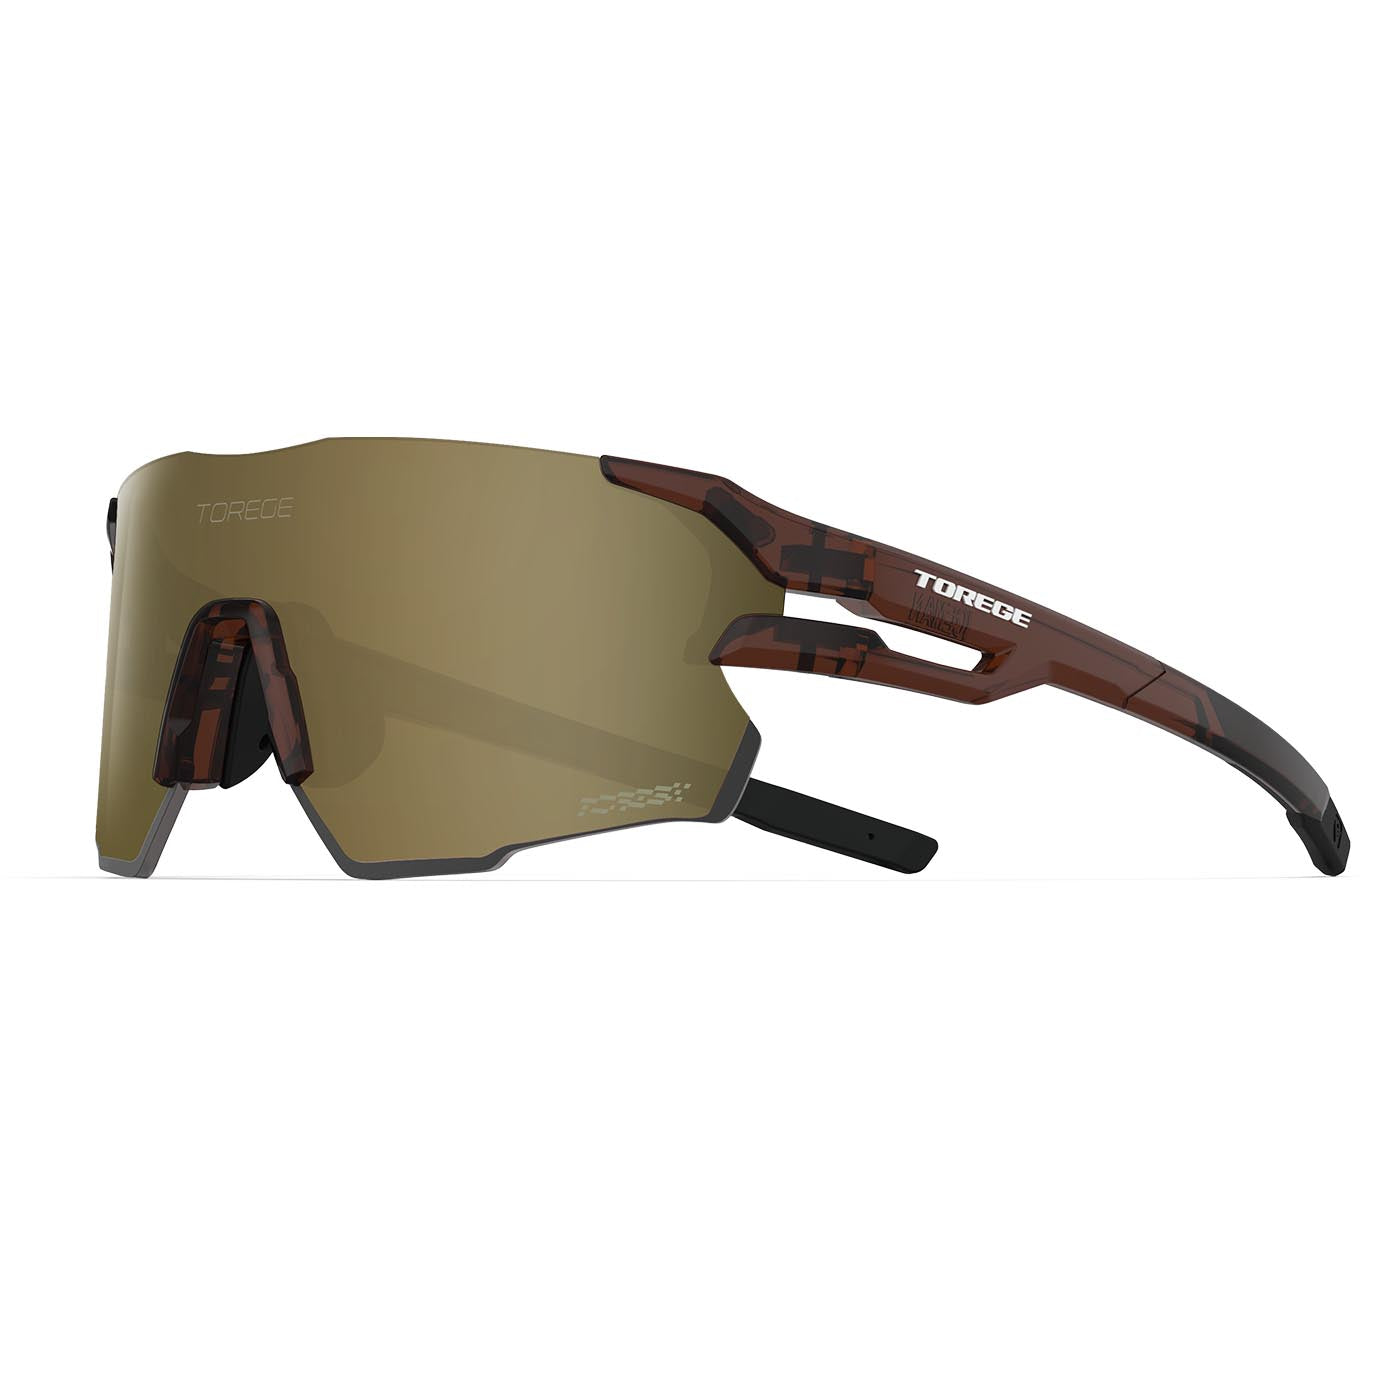 Resplenden Ultra Lightweight Wraparound Sport Sunglasses for